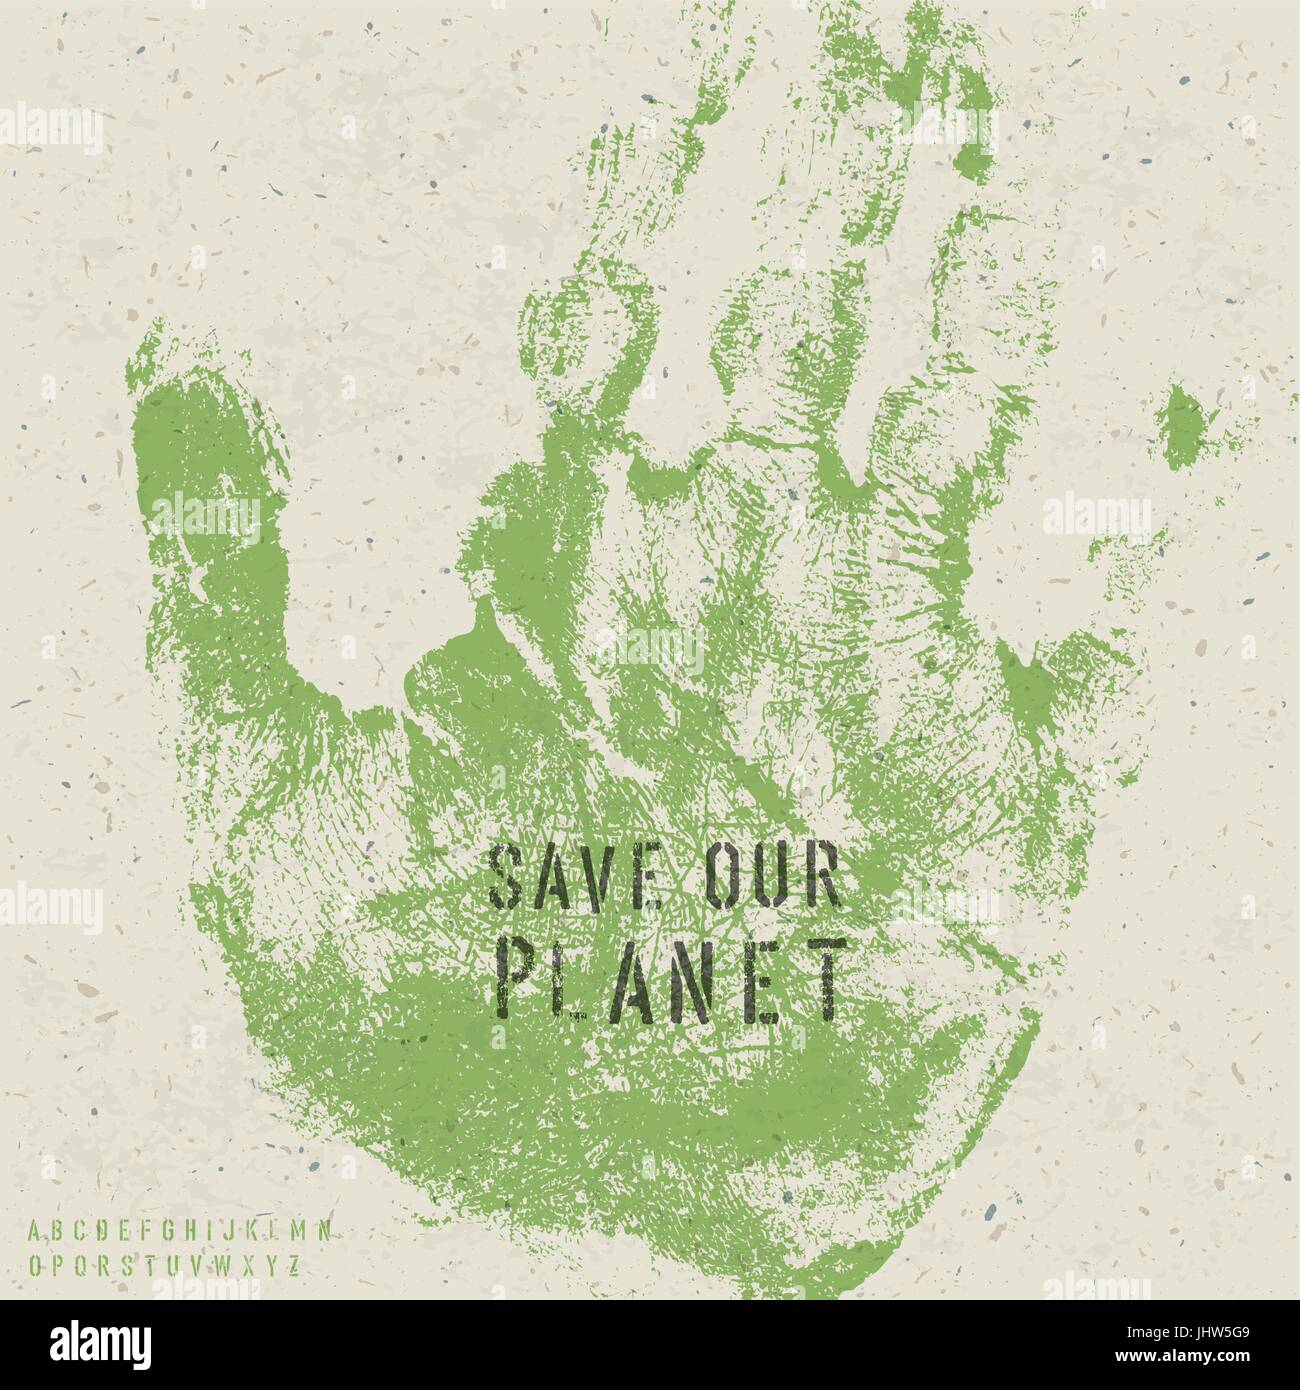 Unser Planet Poster mit Hand print Image und Schablone Alphabet zu retten. Vektor, EPS10 Stock Vektor